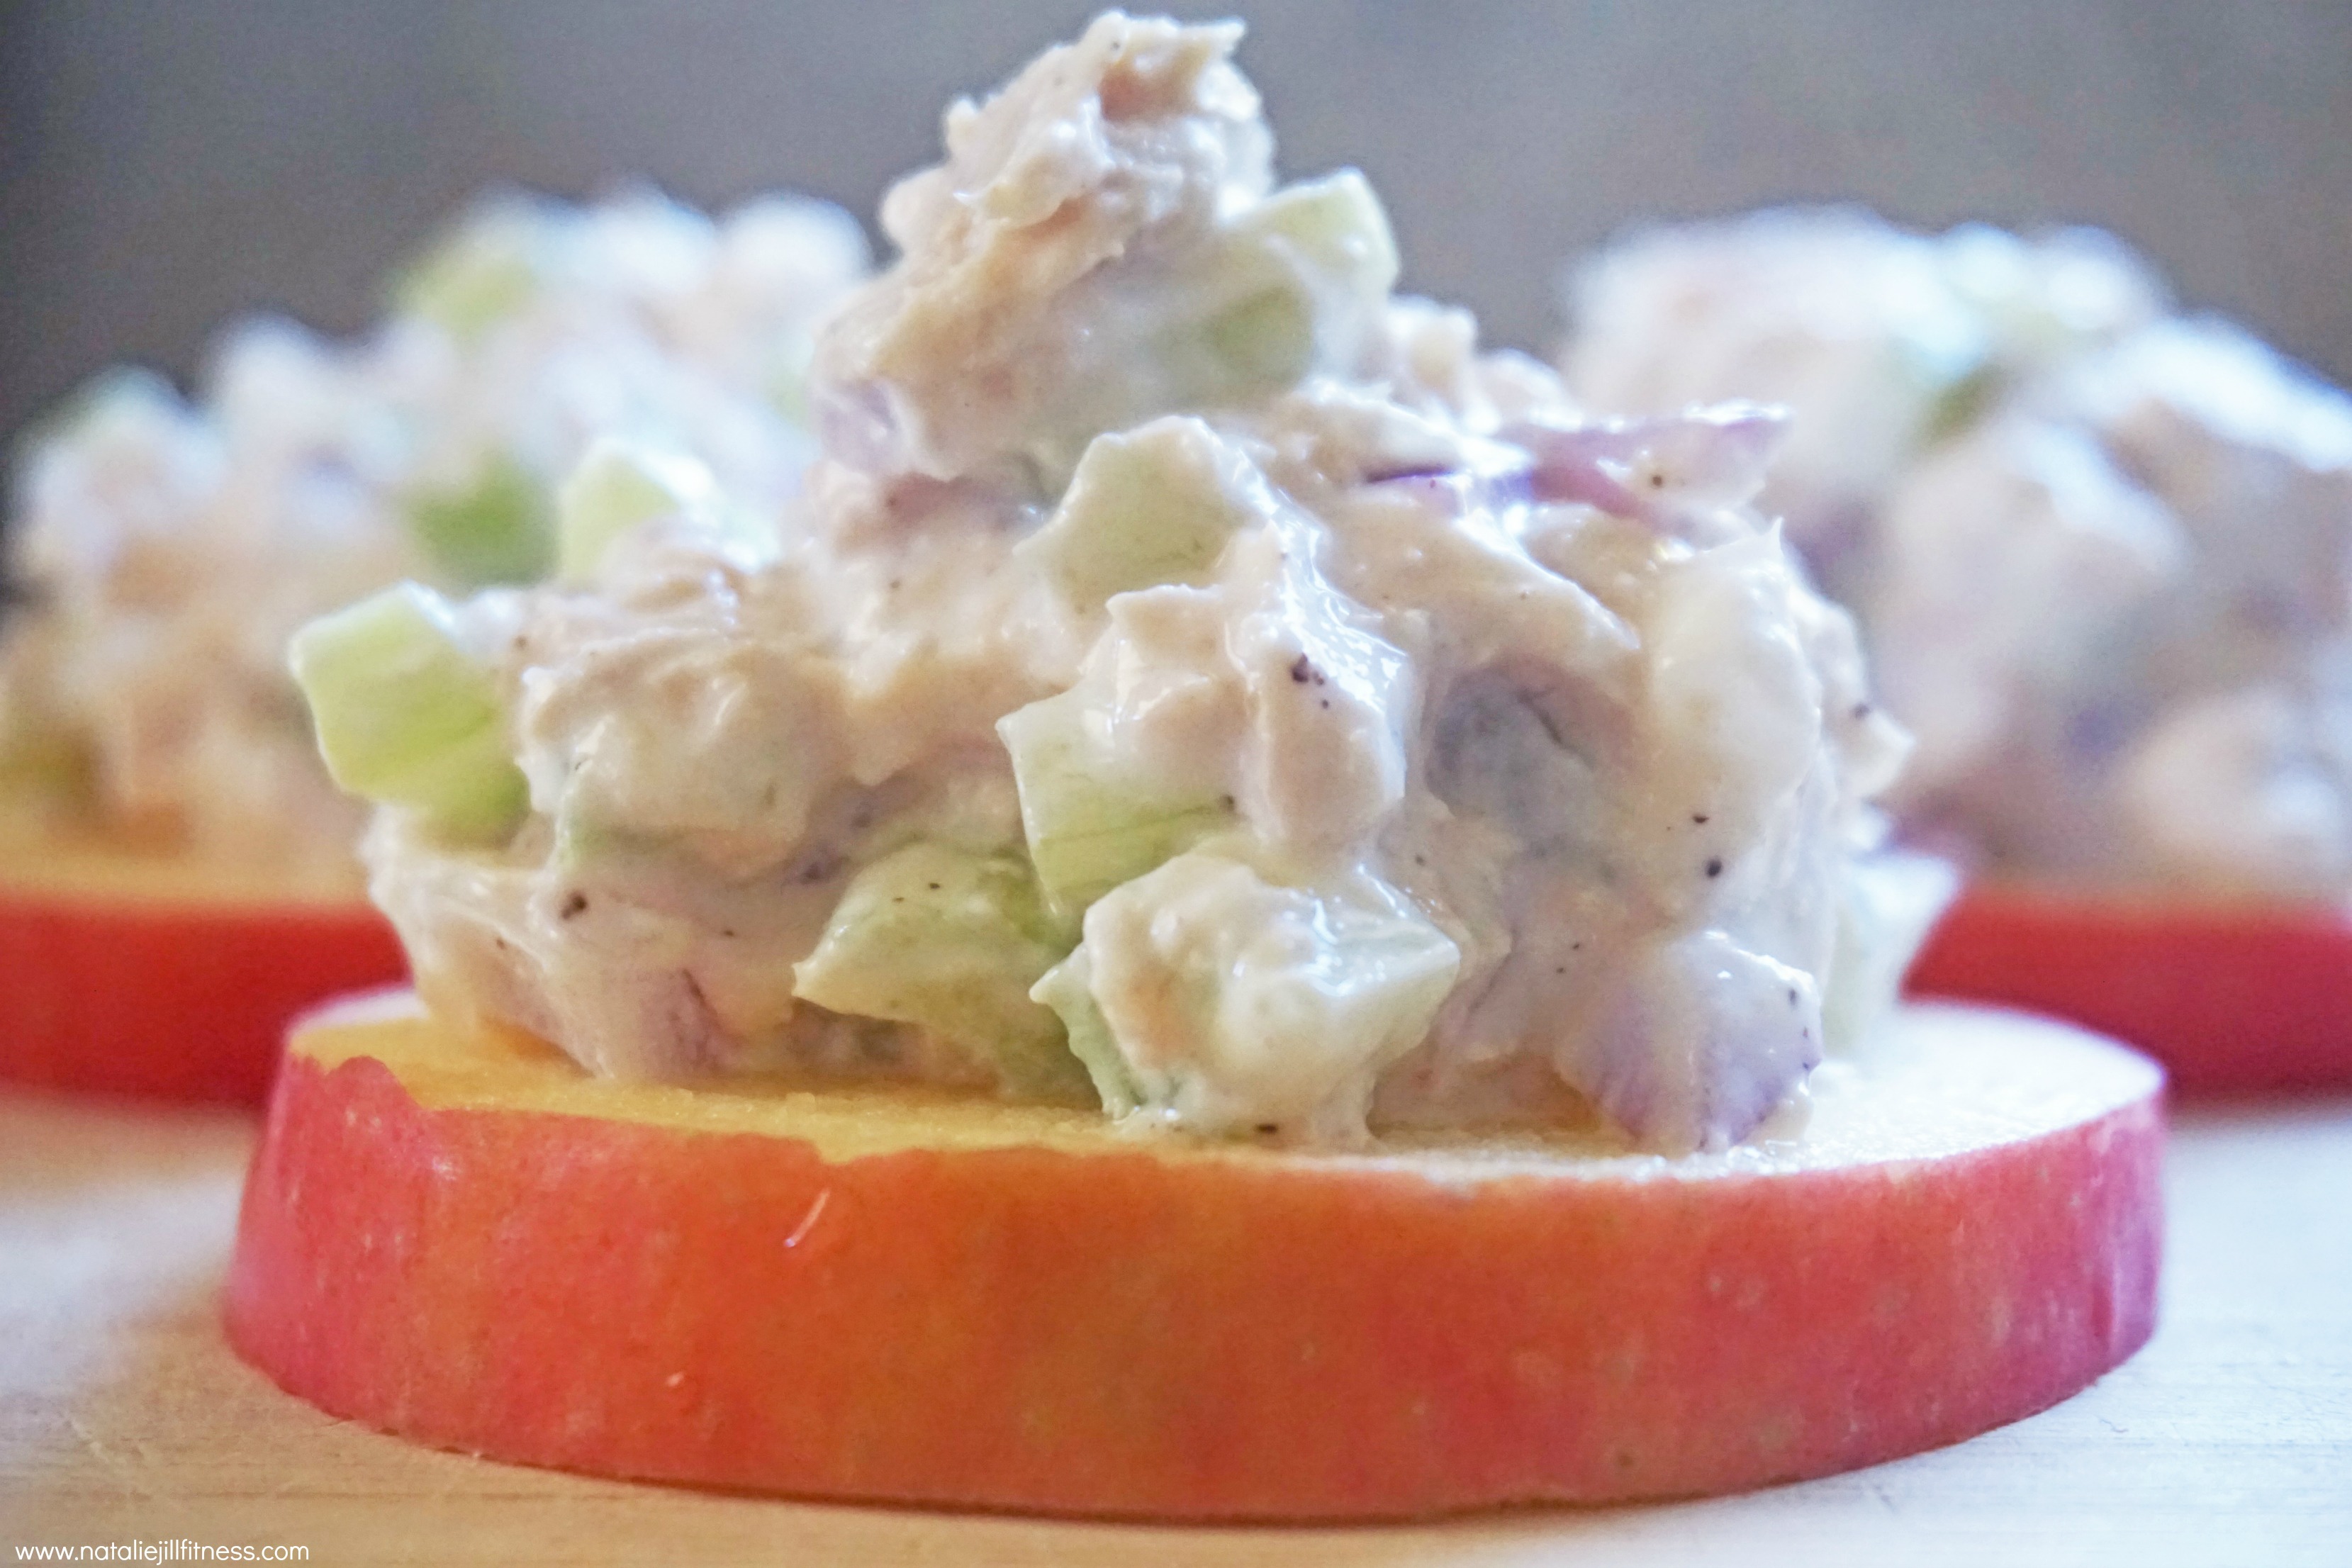 Tuna Salad Apple Sliders with natalie jill 2